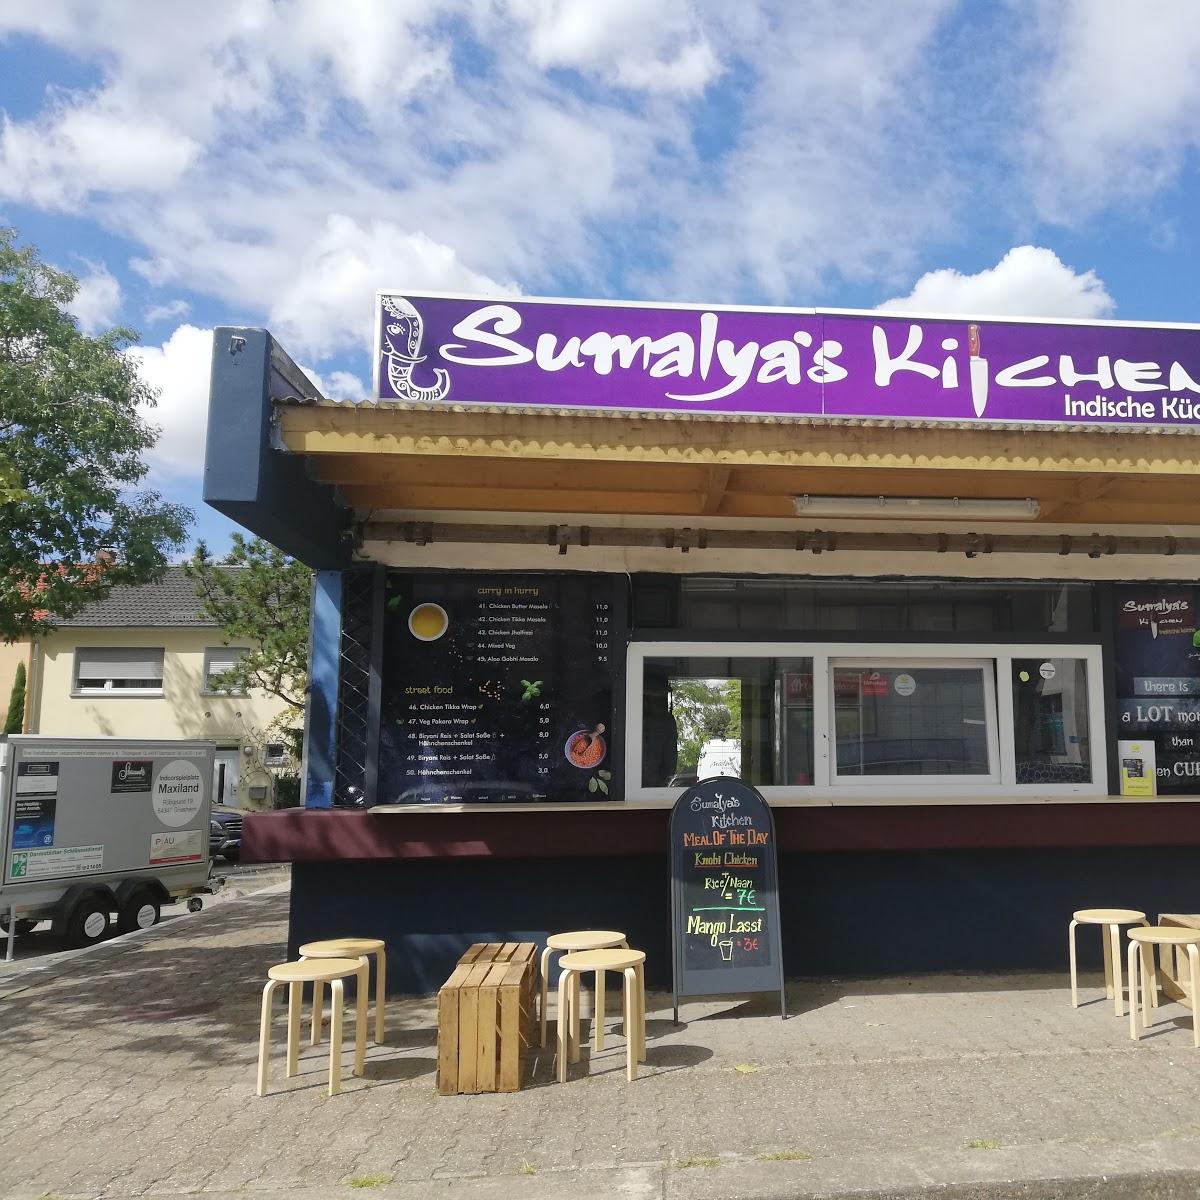 Restaurant "Sumalya